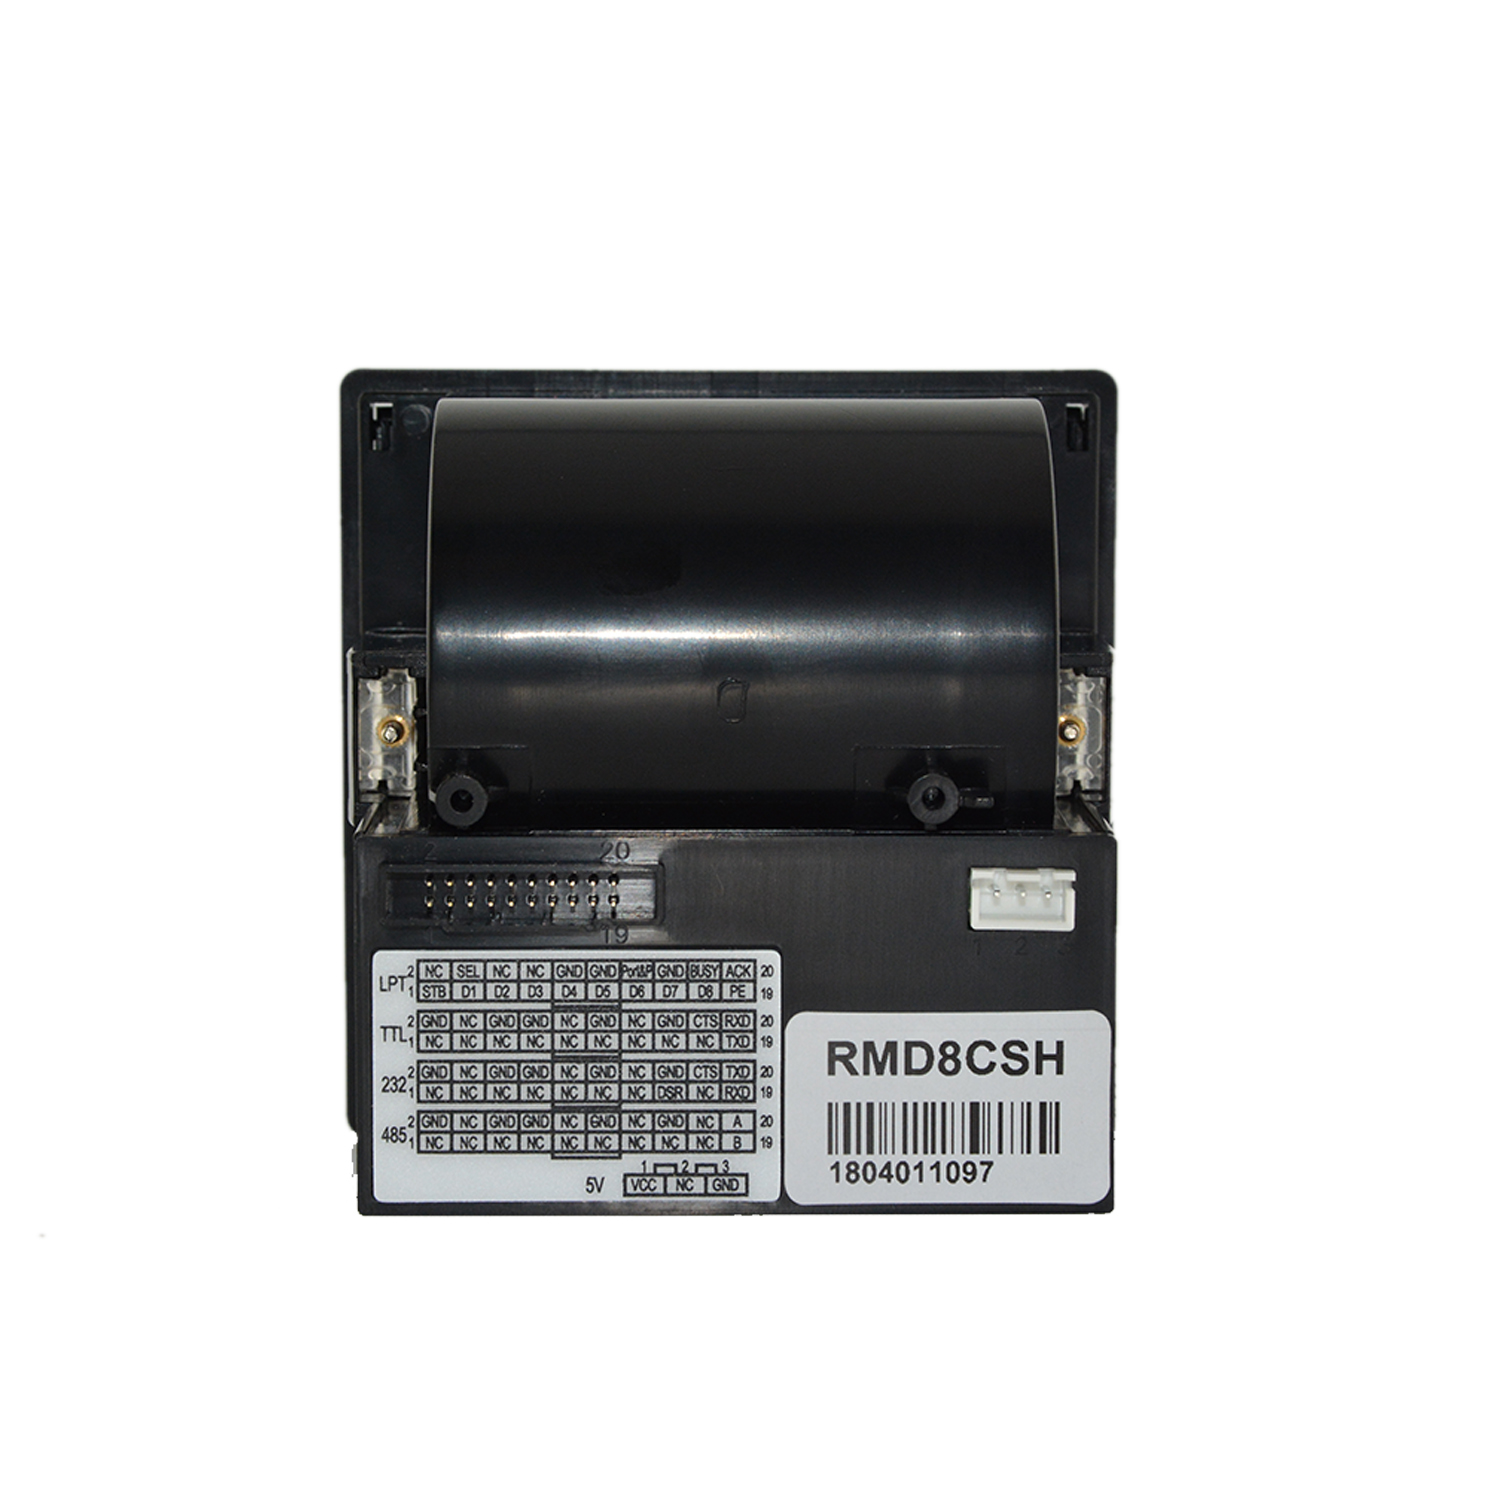 Impresora de panel térmico con montaje de recibos ESC/POS de 58 mm HCC-D8